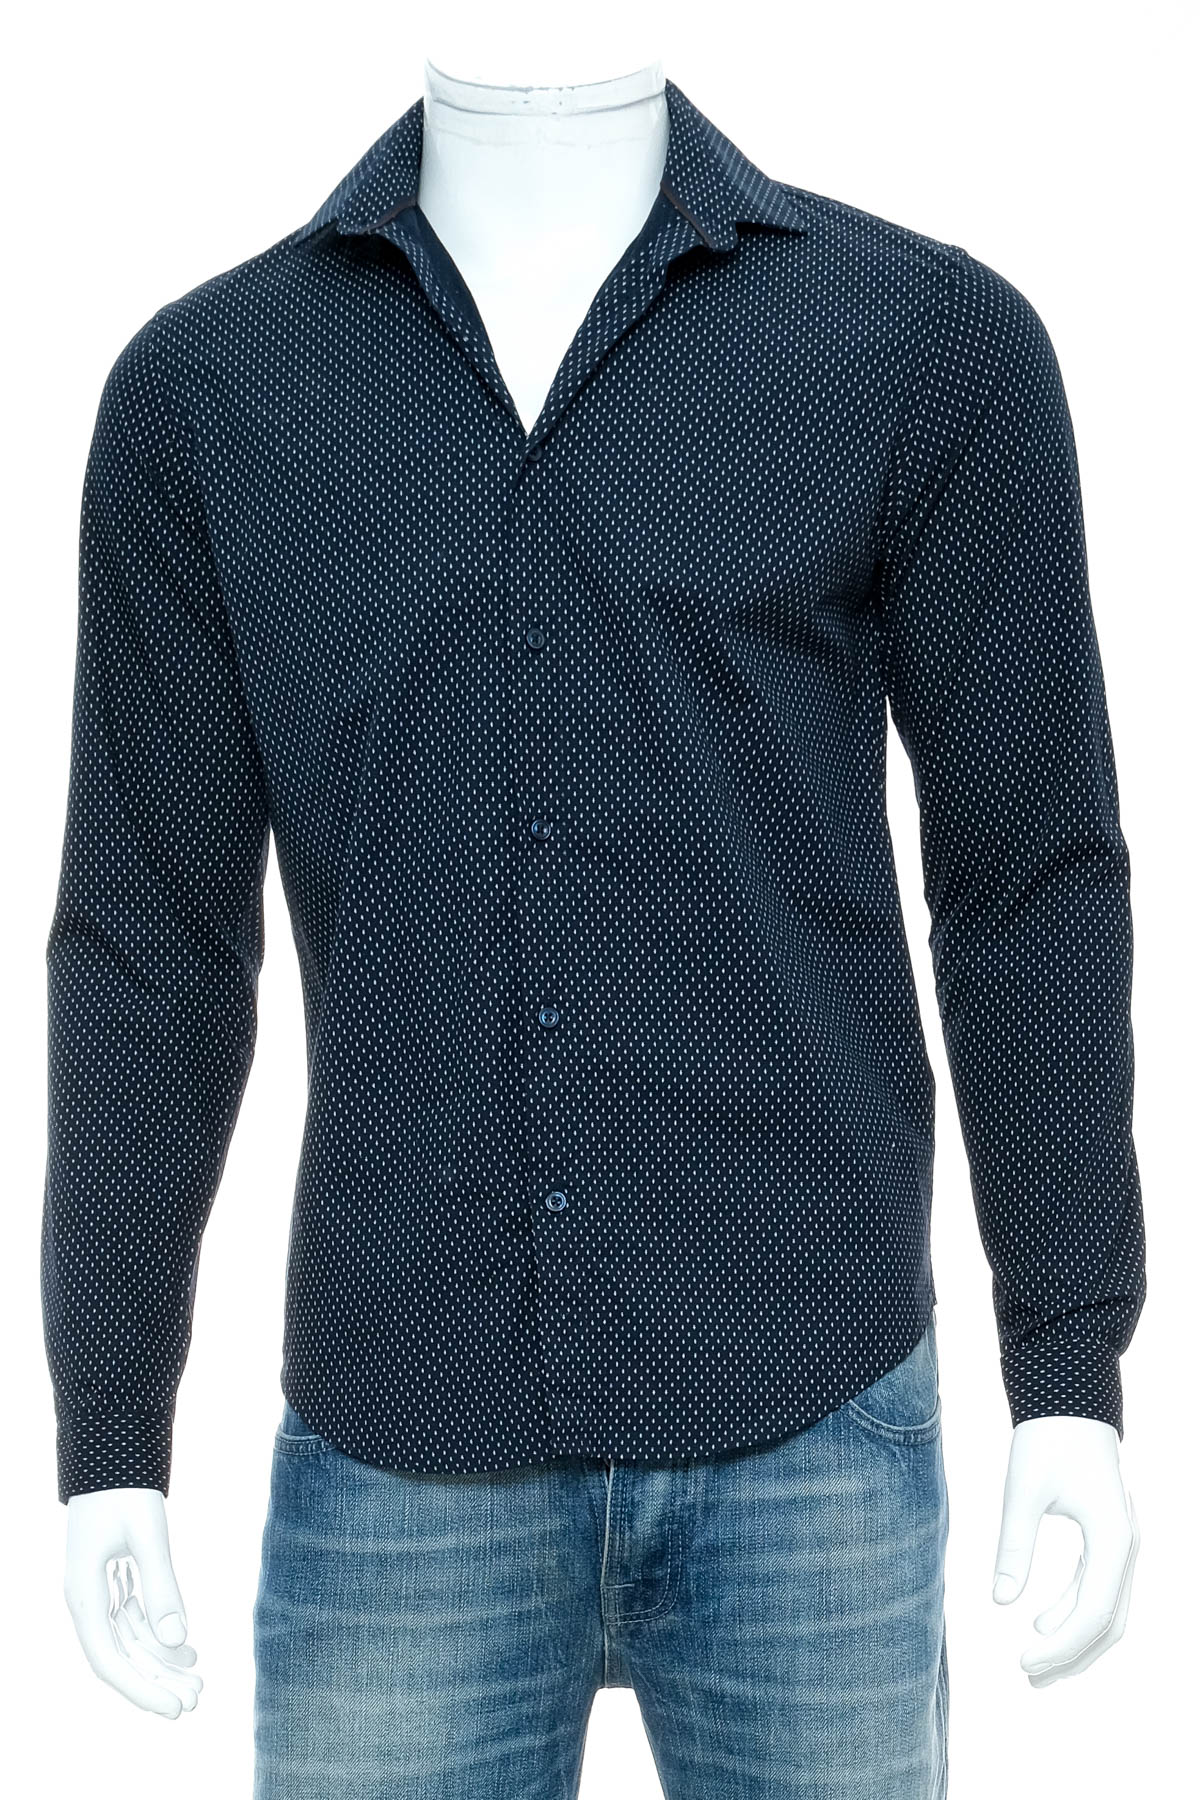 Ανδρικό πουκάμισο - ZARA Man - 0